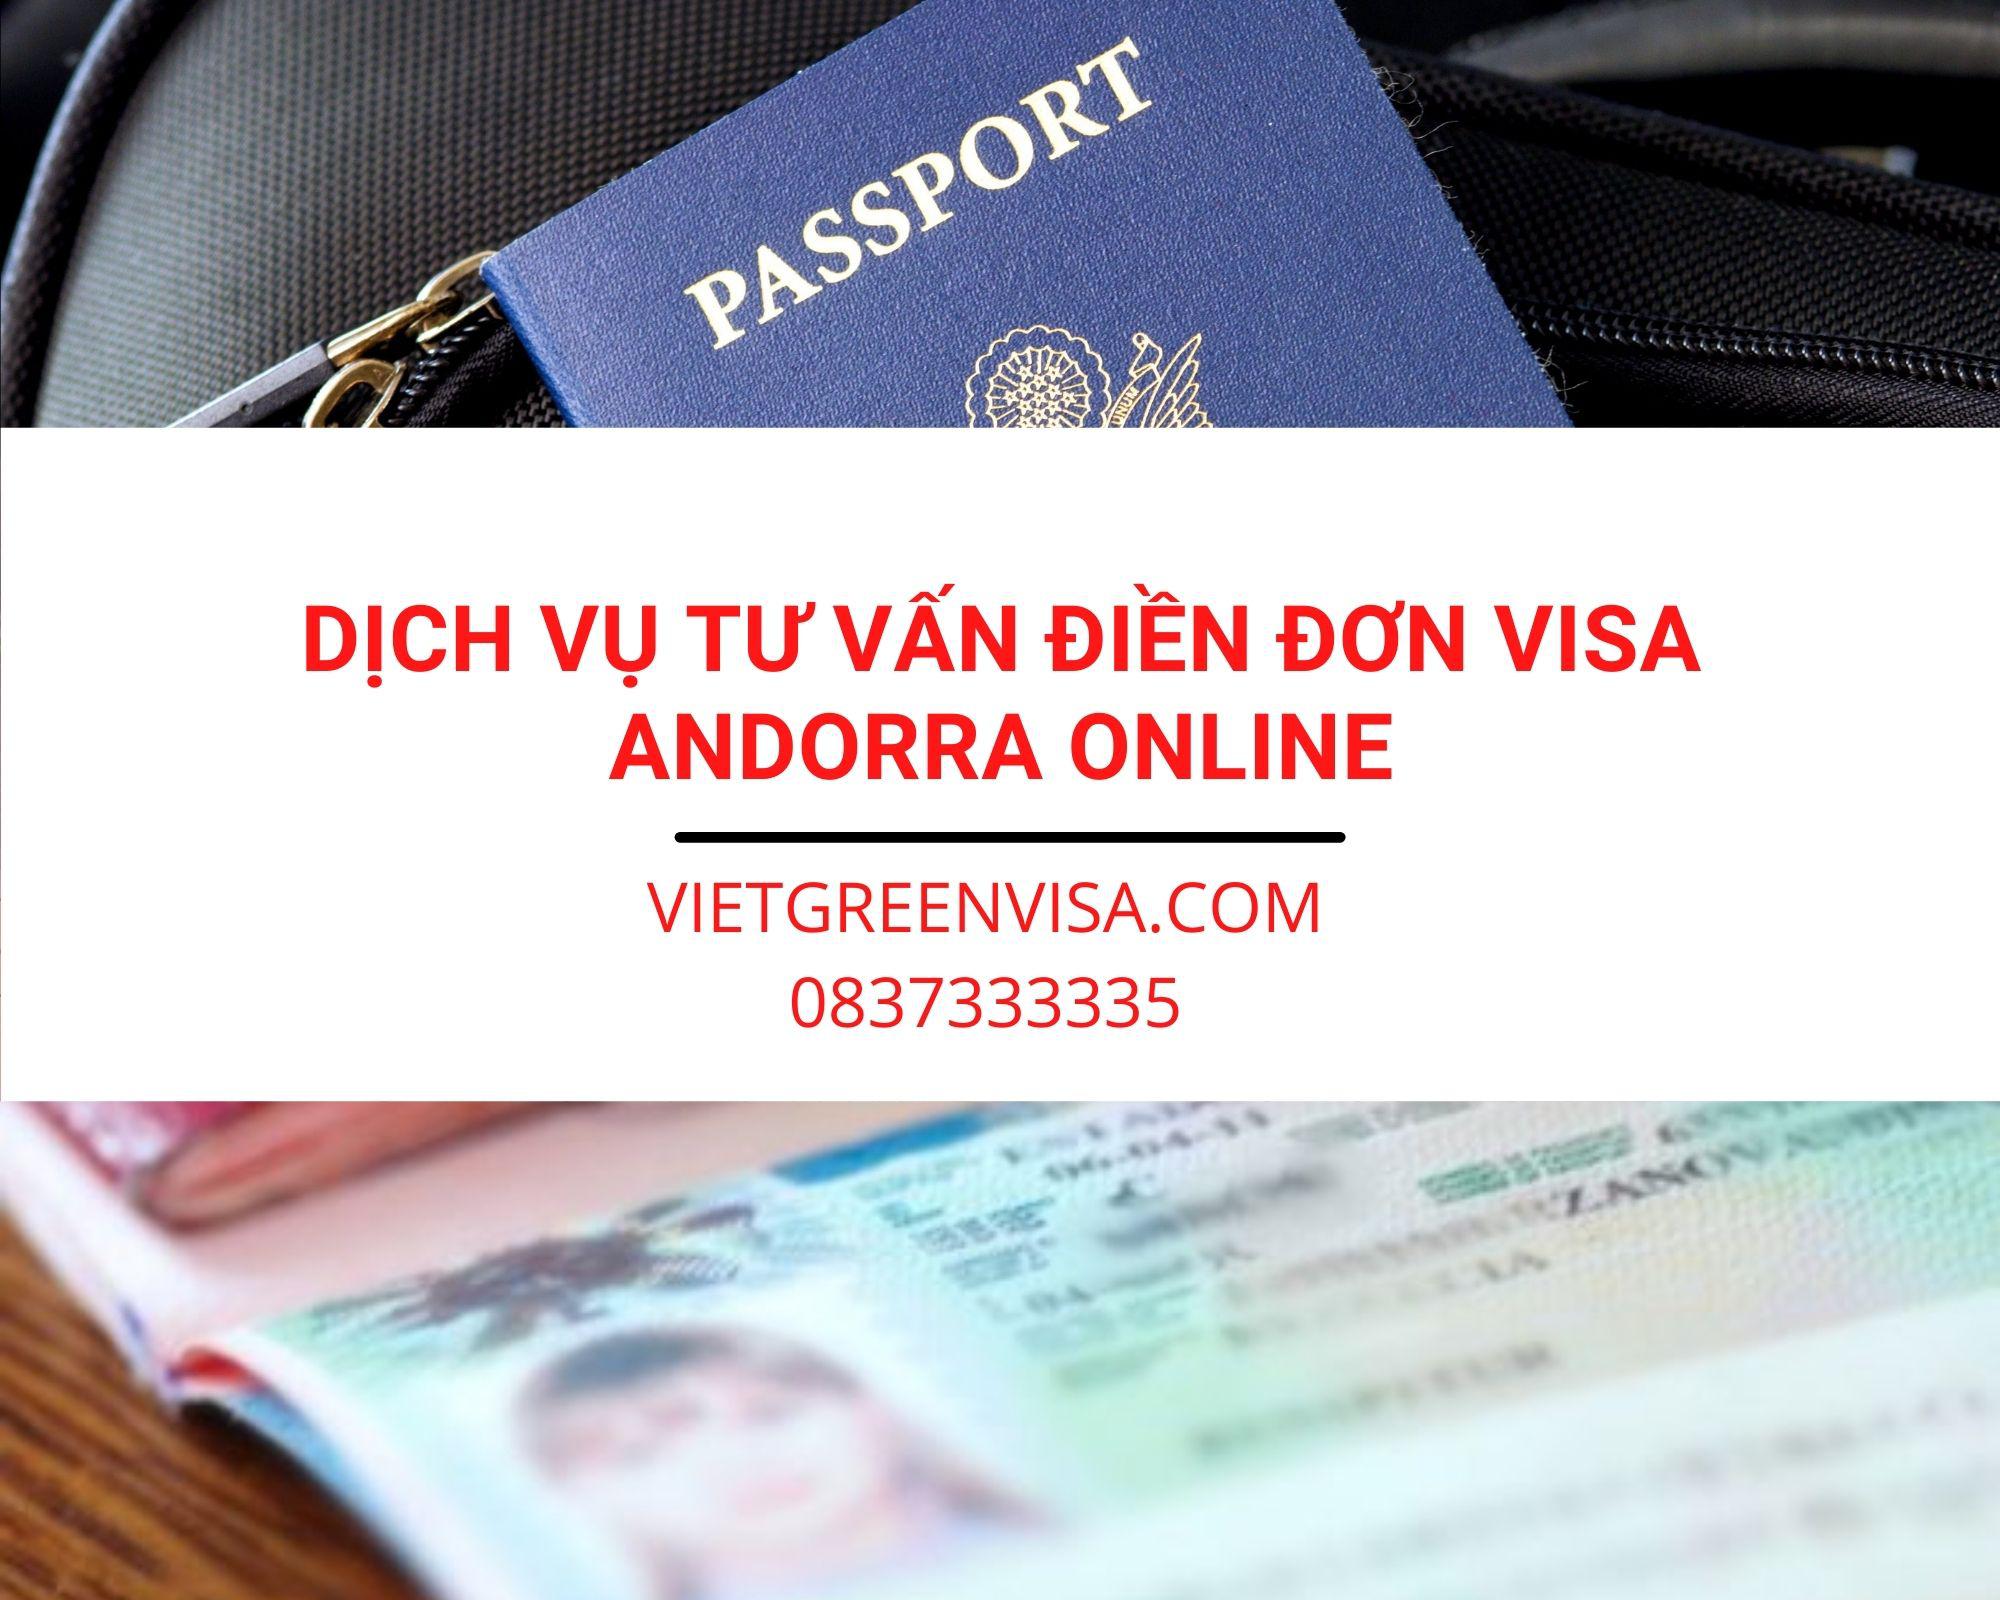 Dịch vụ tư vấn điền đơn visa Andorra online nhanh